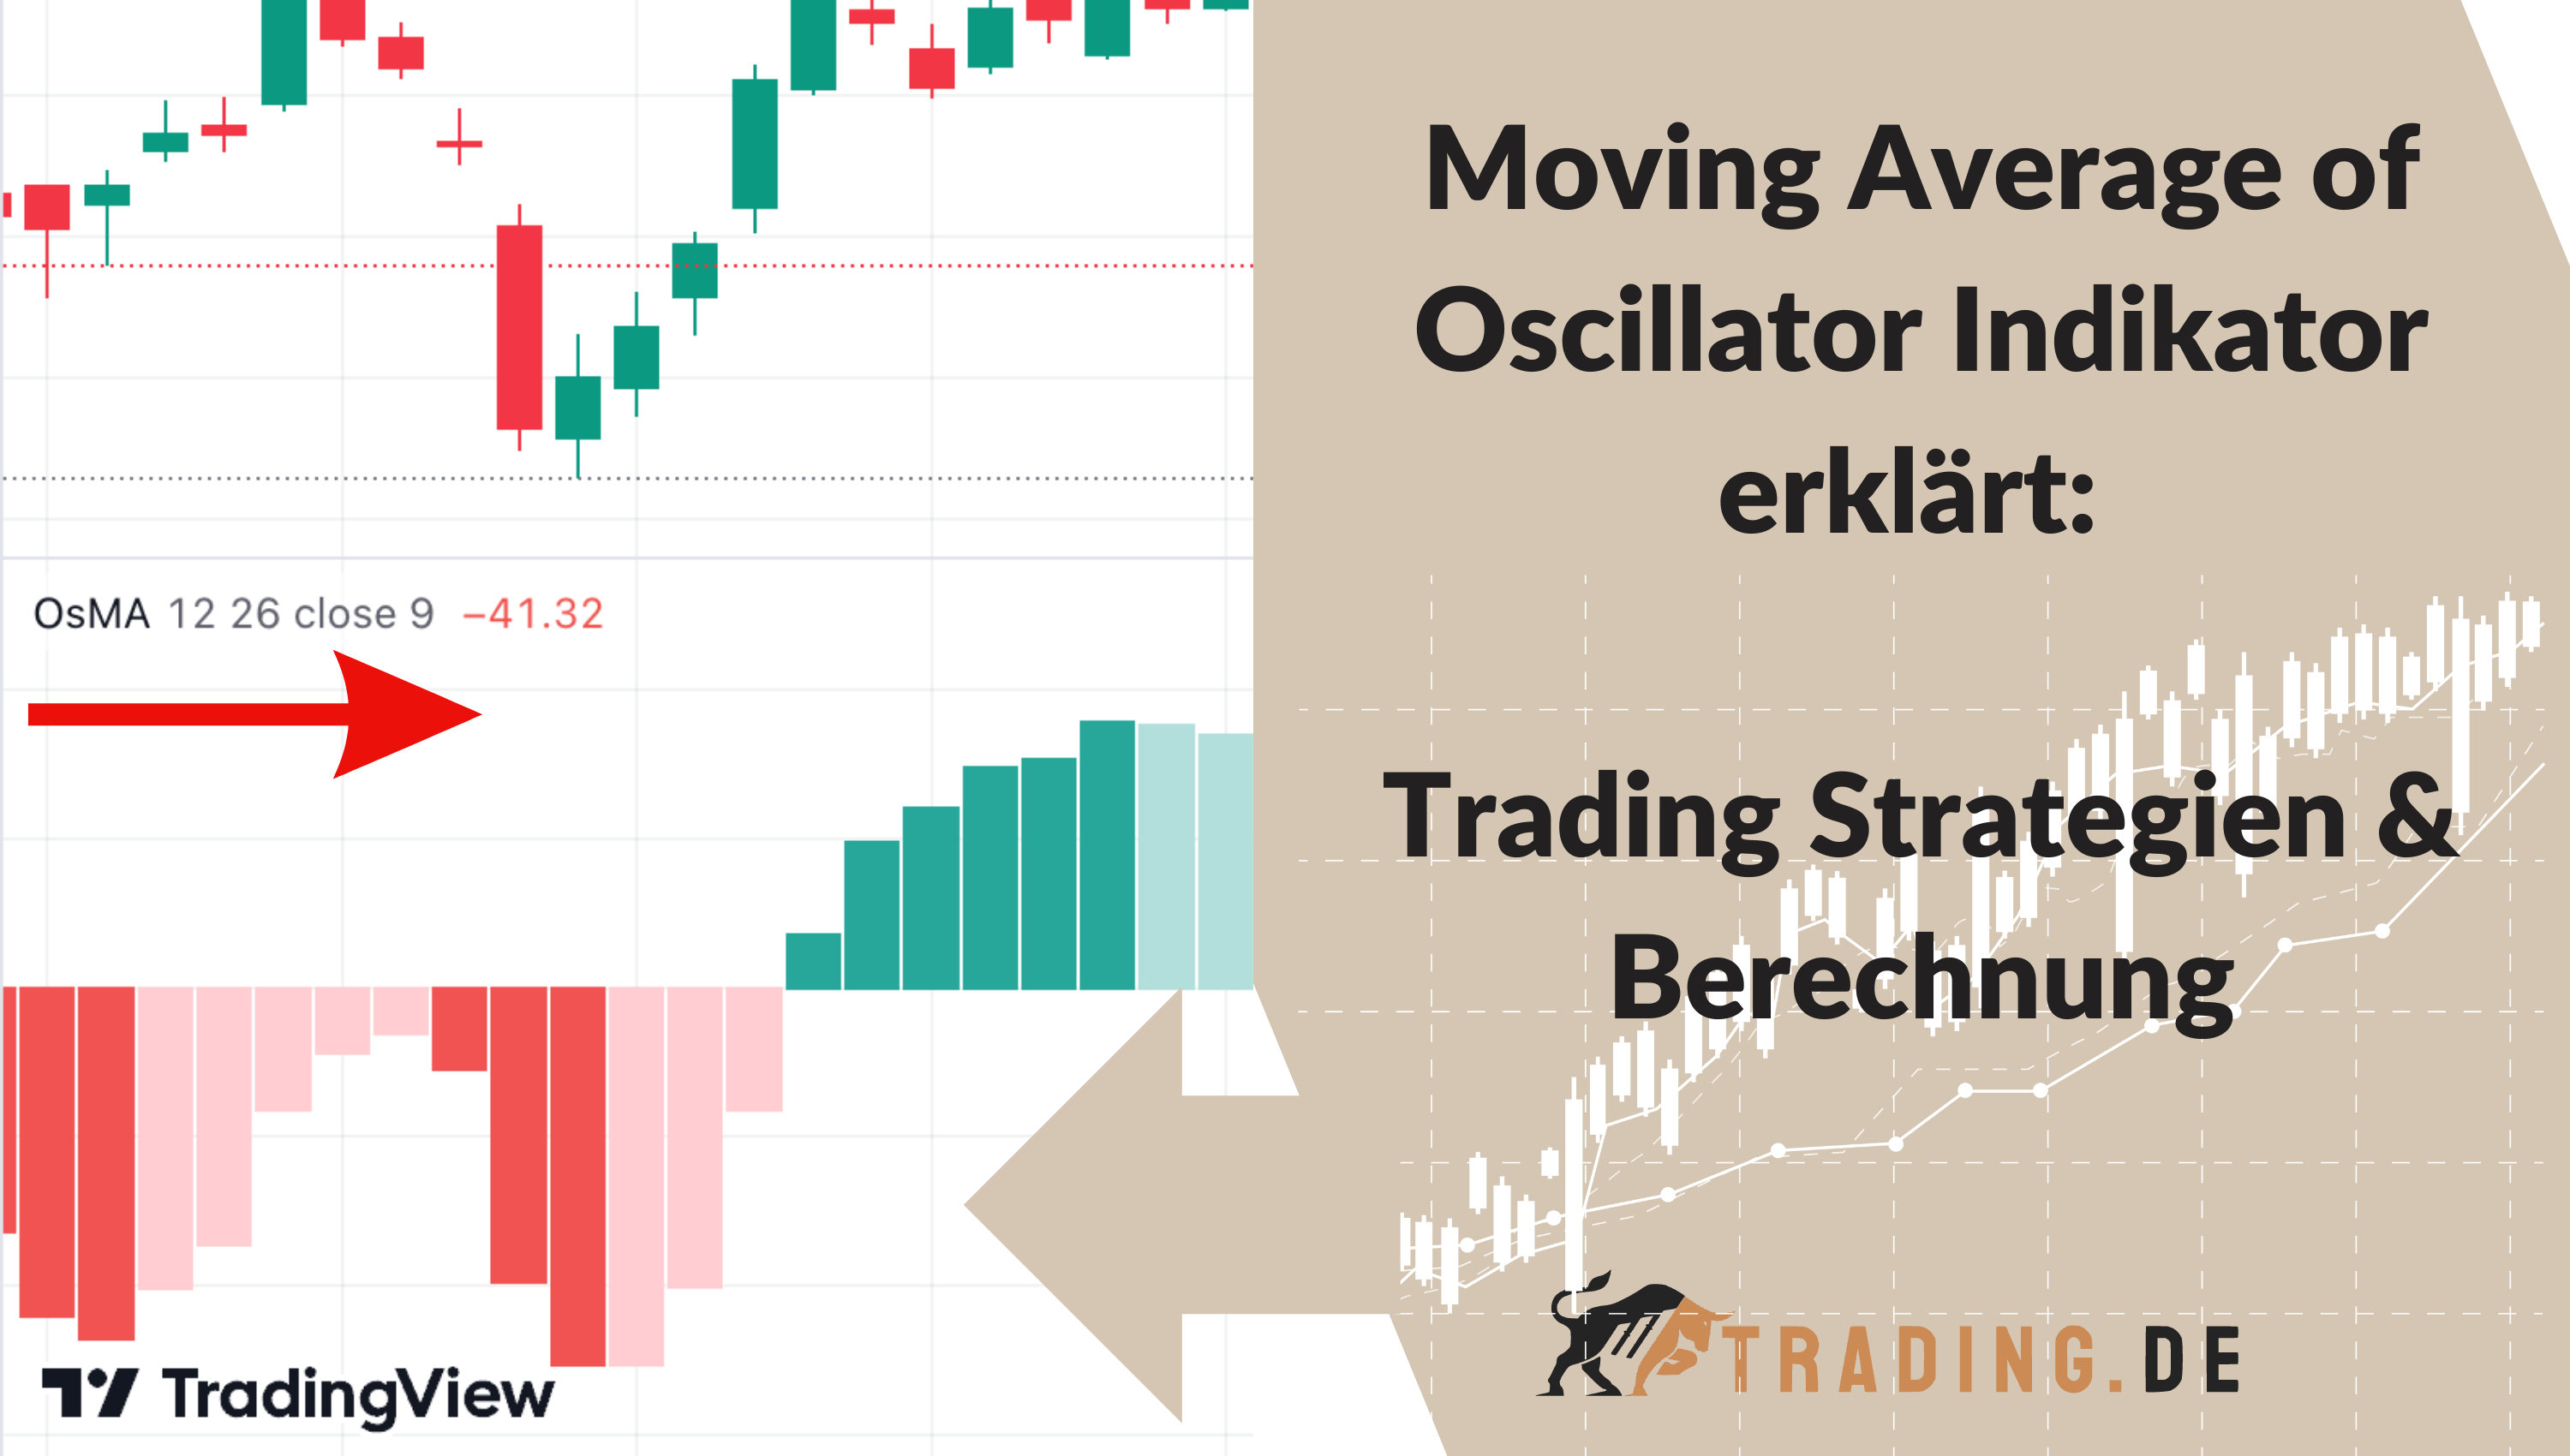 Moving Average of Oscillator Indikator erklärt Trading Strategien & Berechnung